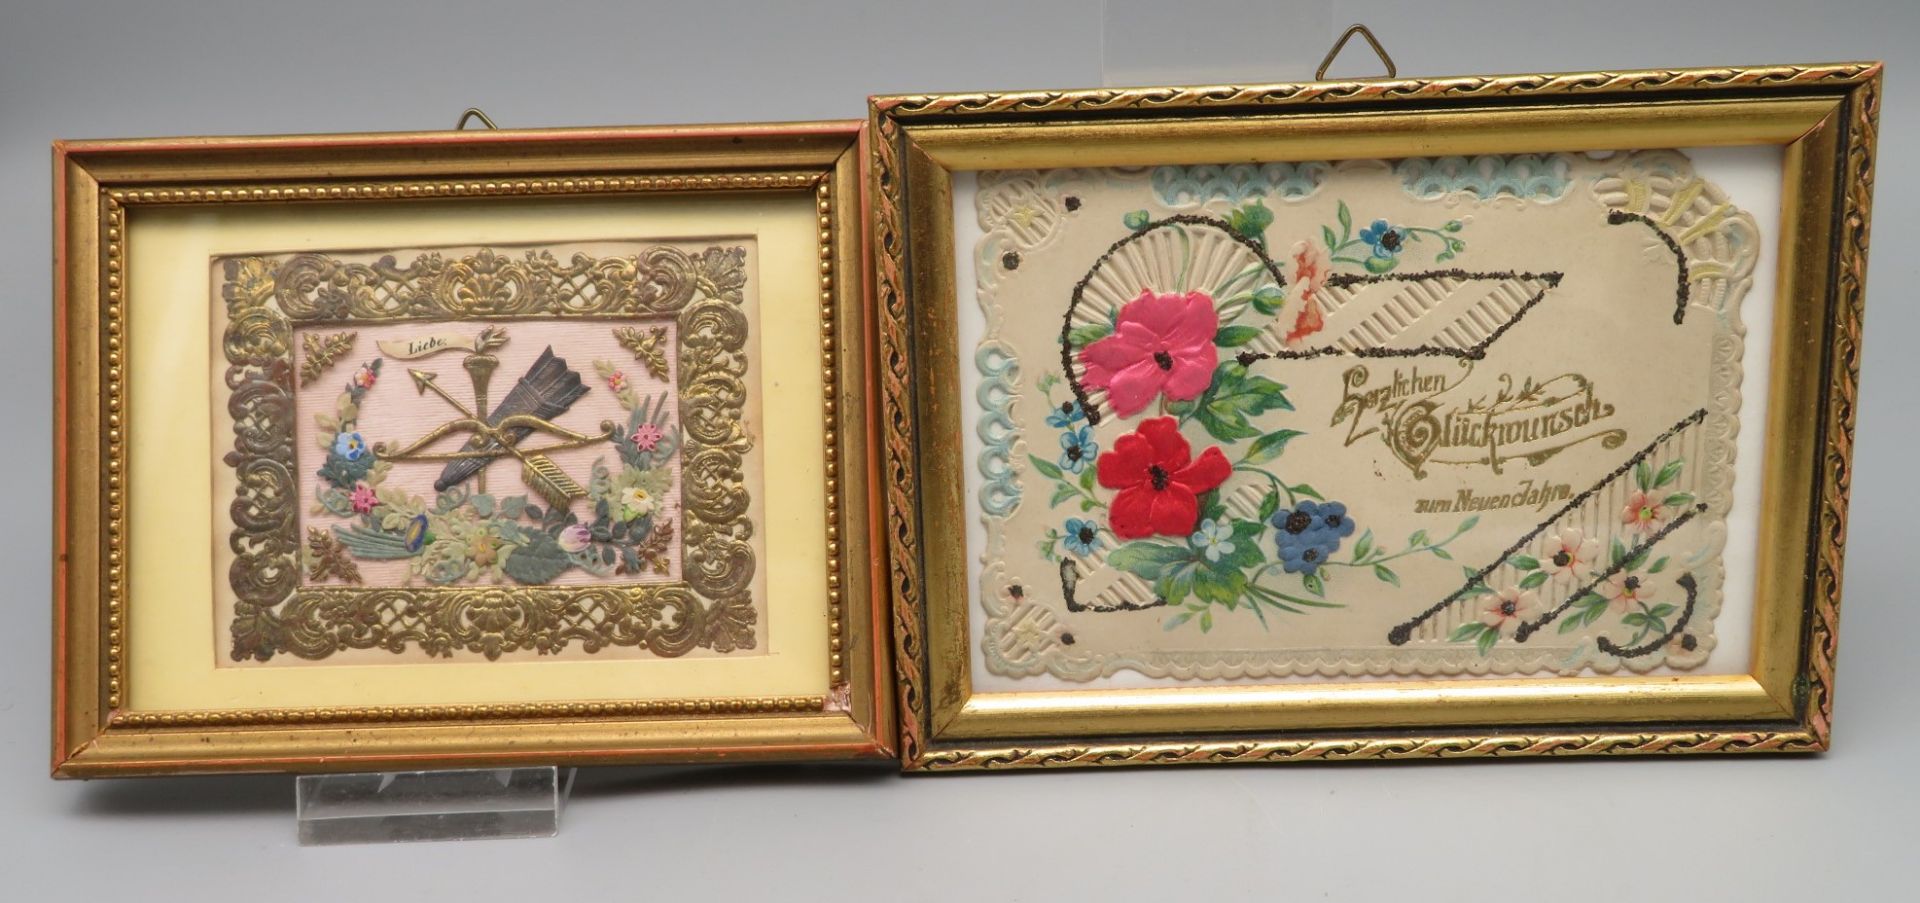 2 Papierbildchen, 19. Jahrhundert, 10 x 13,5/10,5 x 14,5 cm.